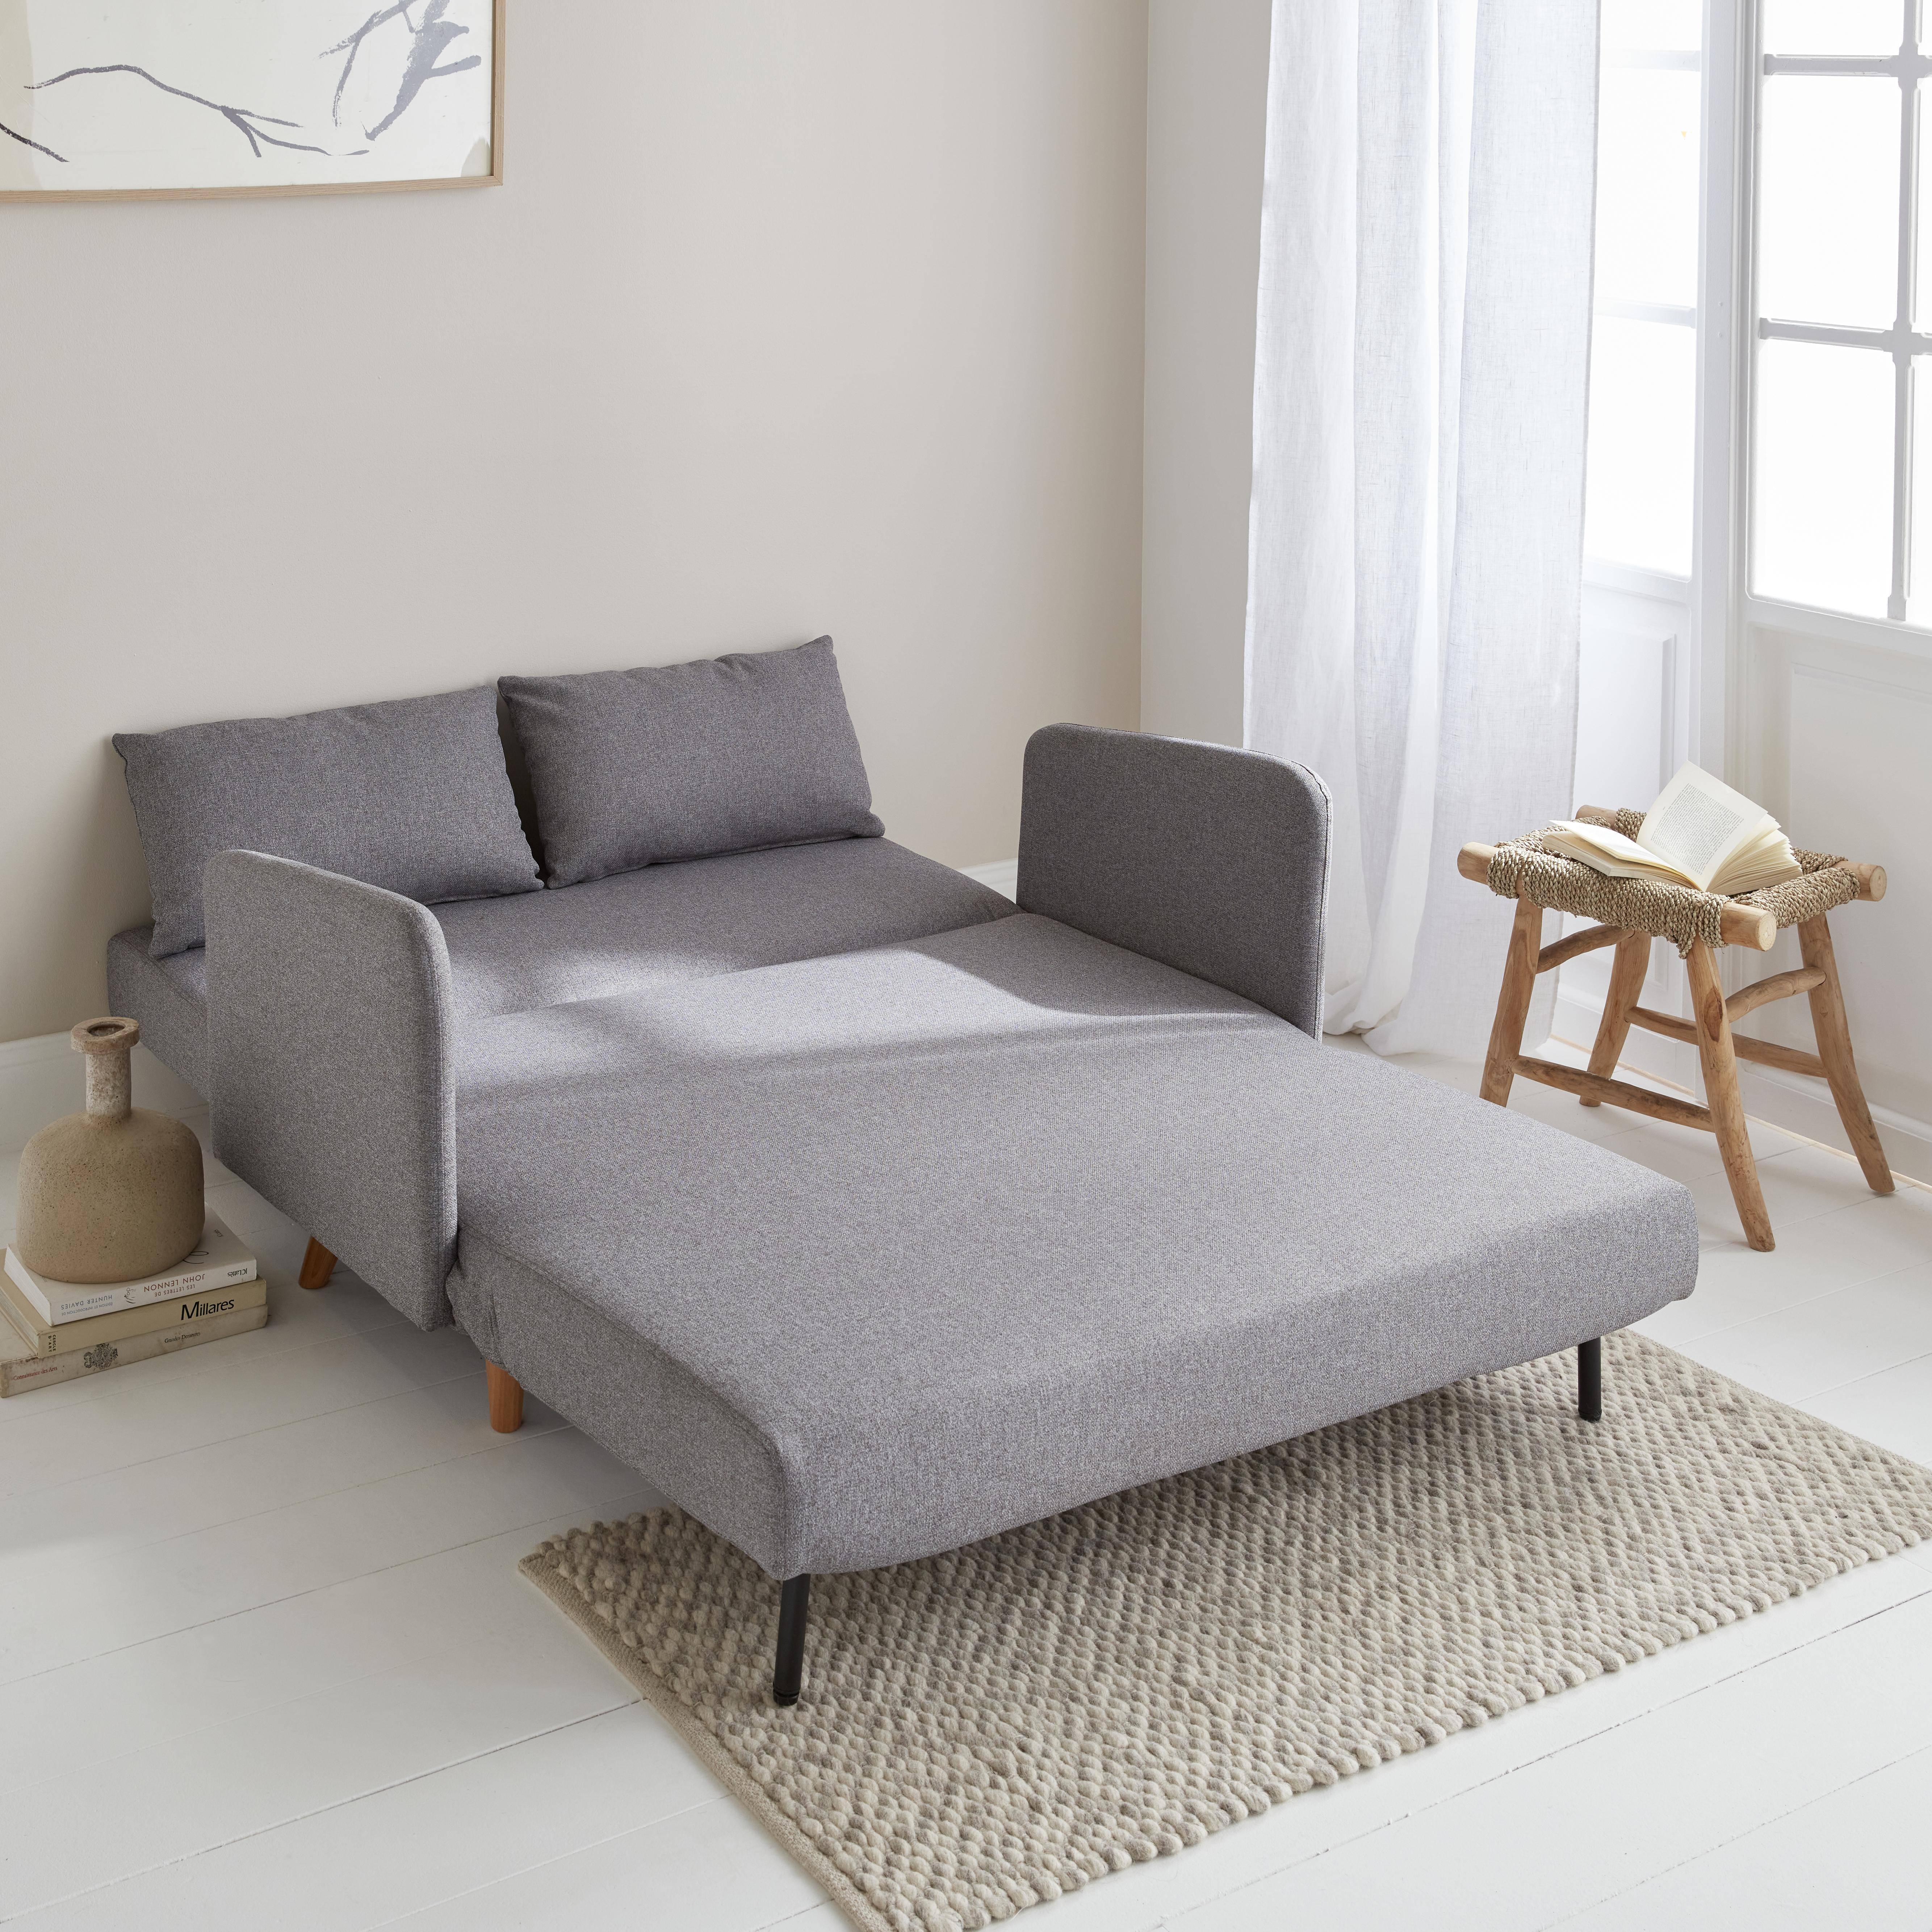 Divano-letto in tessuto - Panam - Scandinavo a 2 posti, gambe in legno chiaro grigio chiaro, seduta a panca, schienale reclinabile,sweeek,Photo2